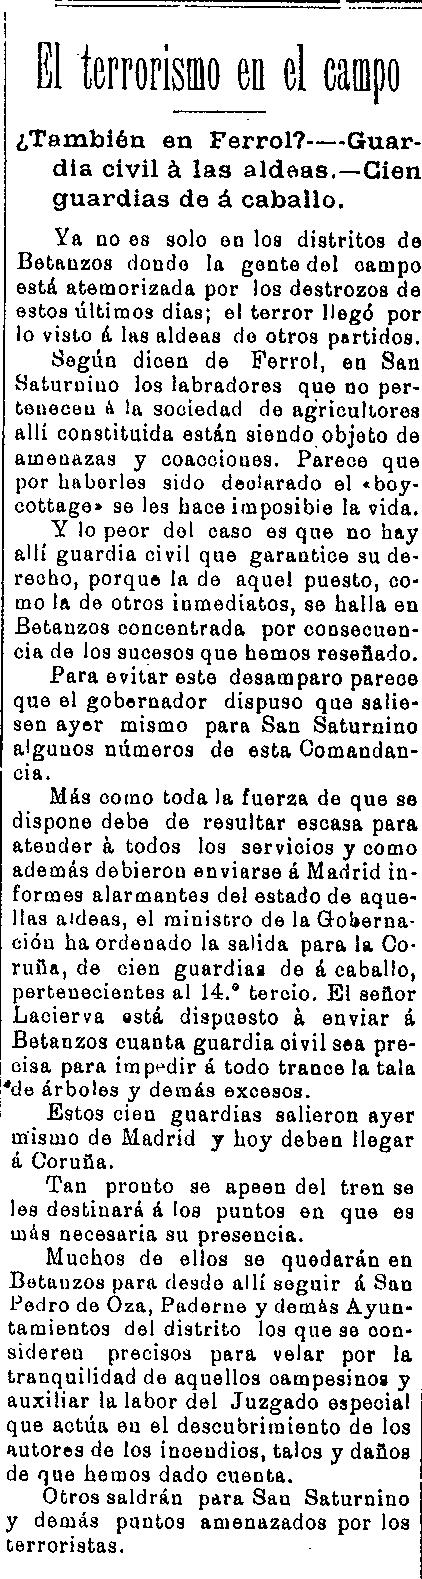 terrorismo-en-el-campo-ideal-gallego-9-5-1909